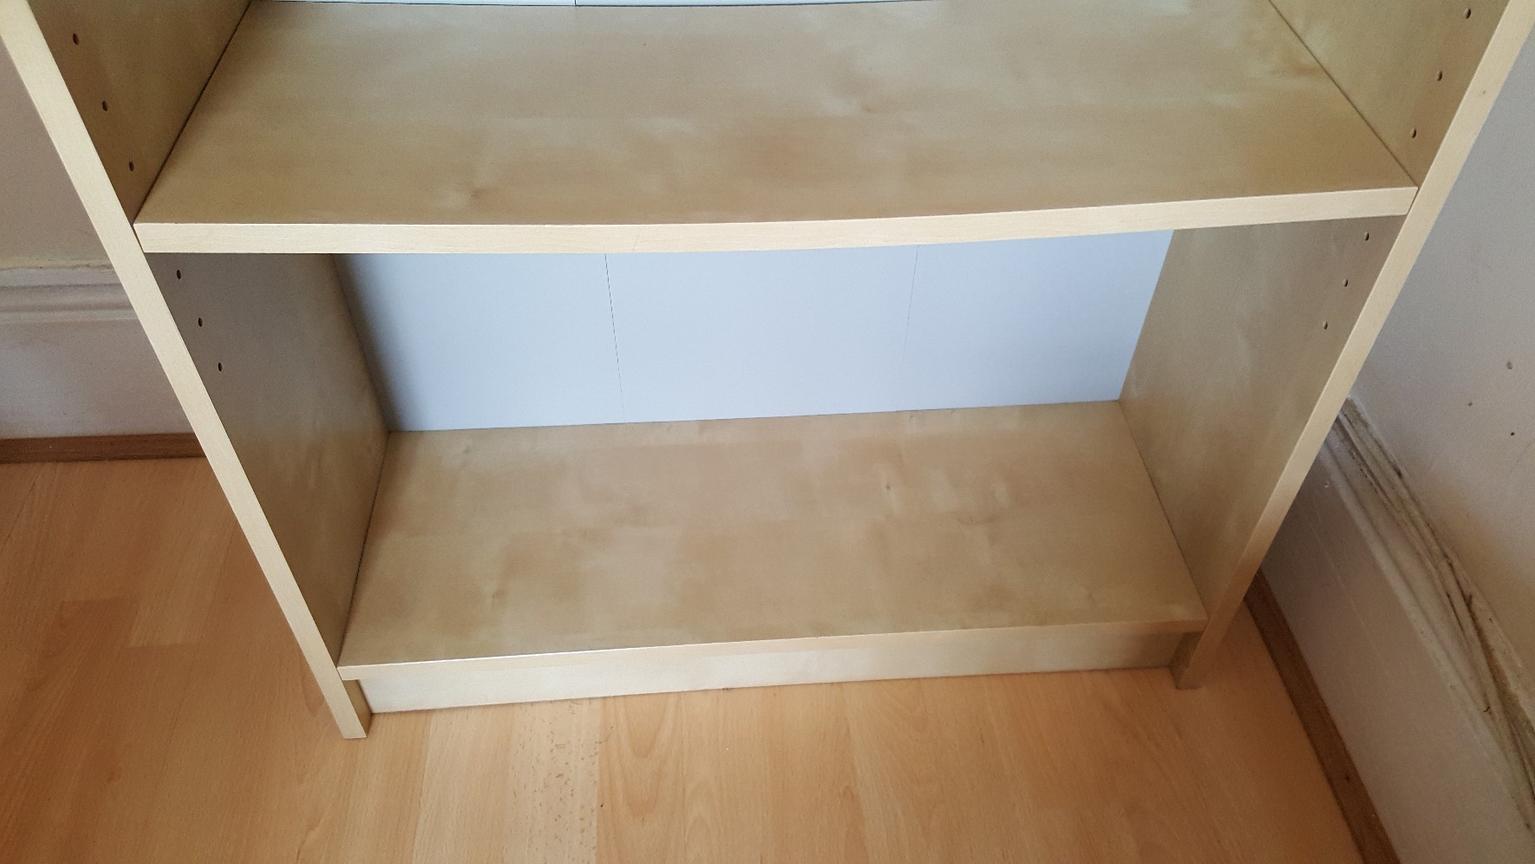 Ikea Kilby Bookshelf Case In Birch Veneer In London Borough Of